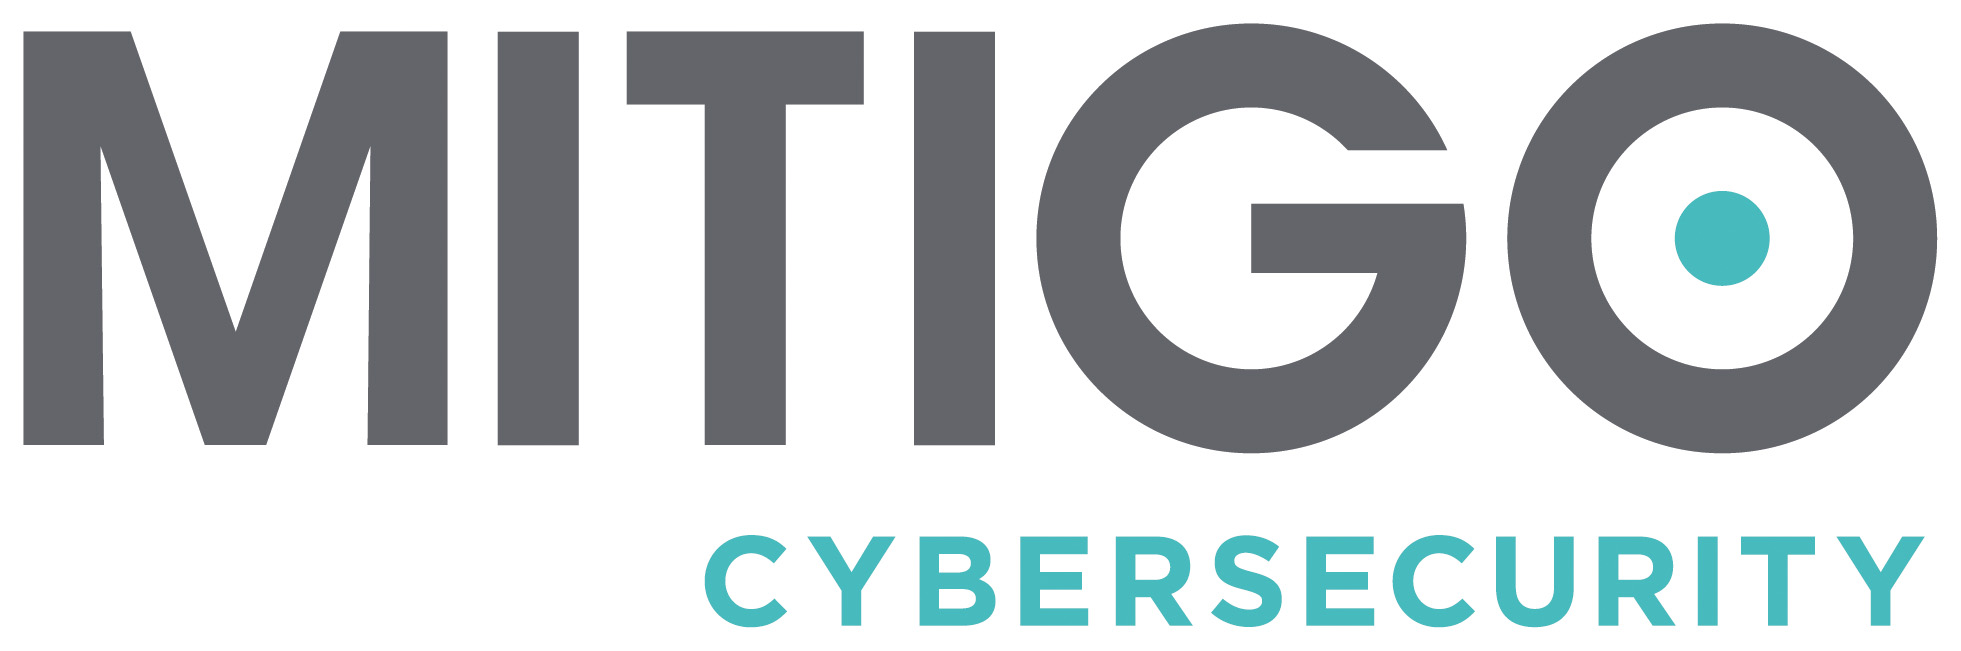 mitigo-cybersecurity-logo.jpg